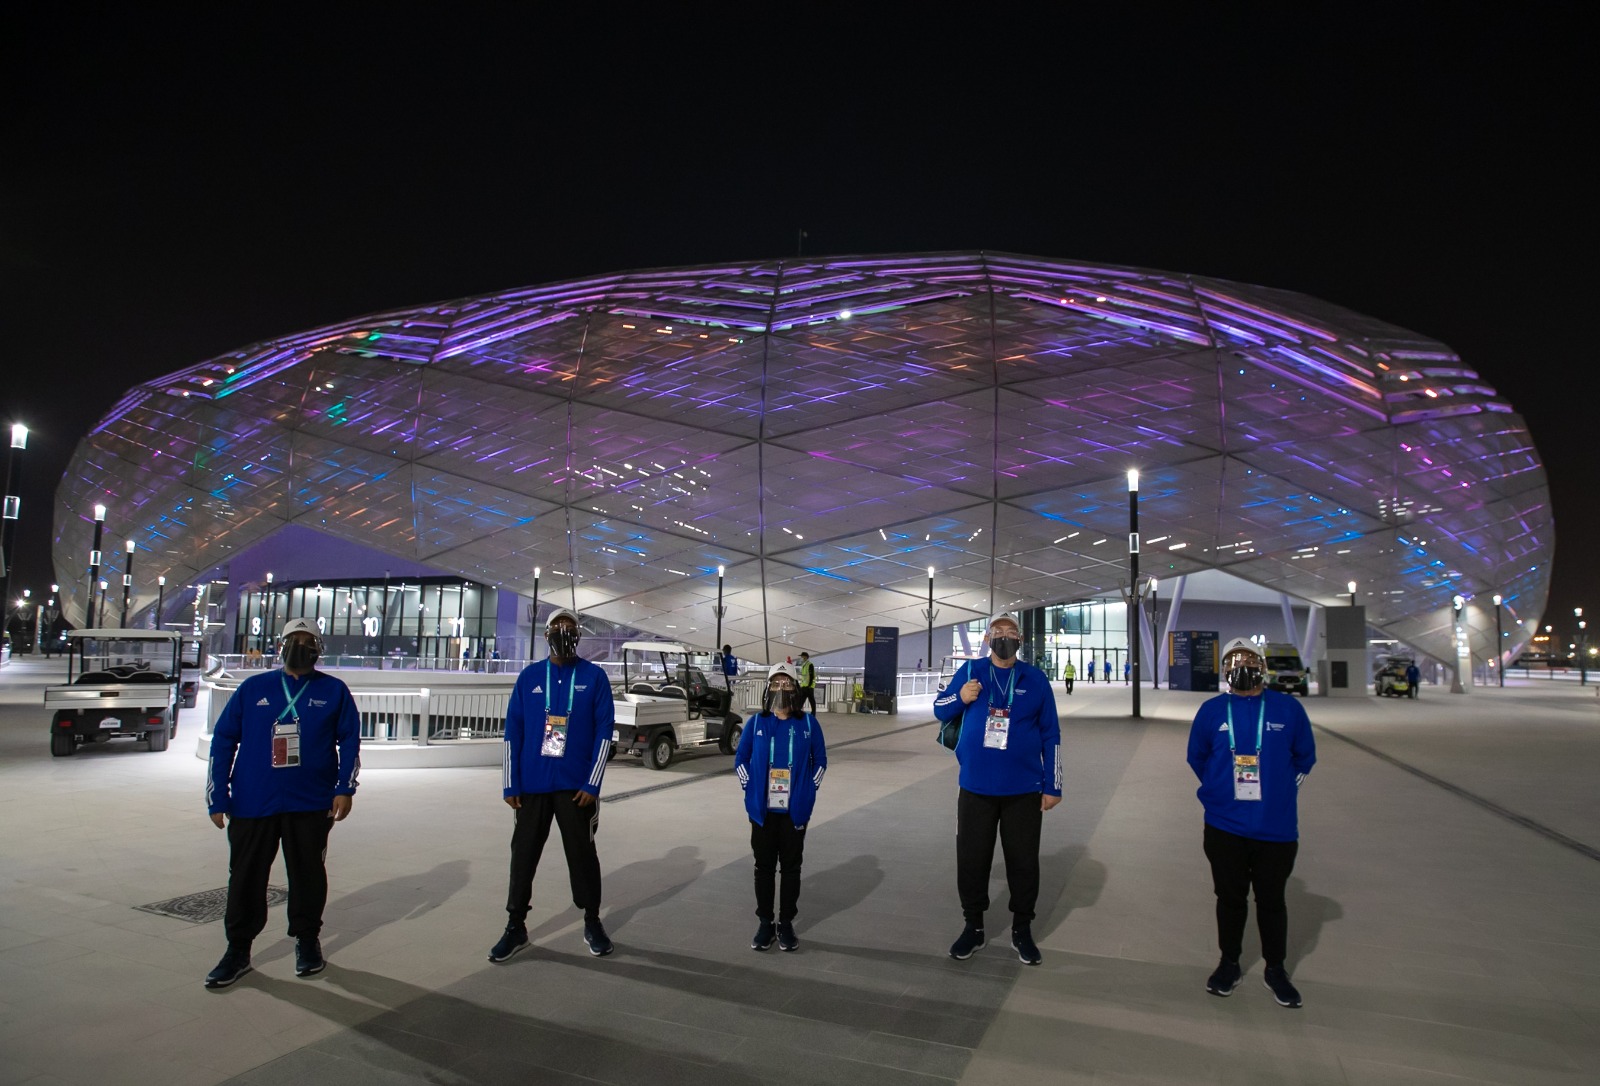 فتح باب الانضمام إلى فريق المتطوعين خلال بطولة كأس العرب